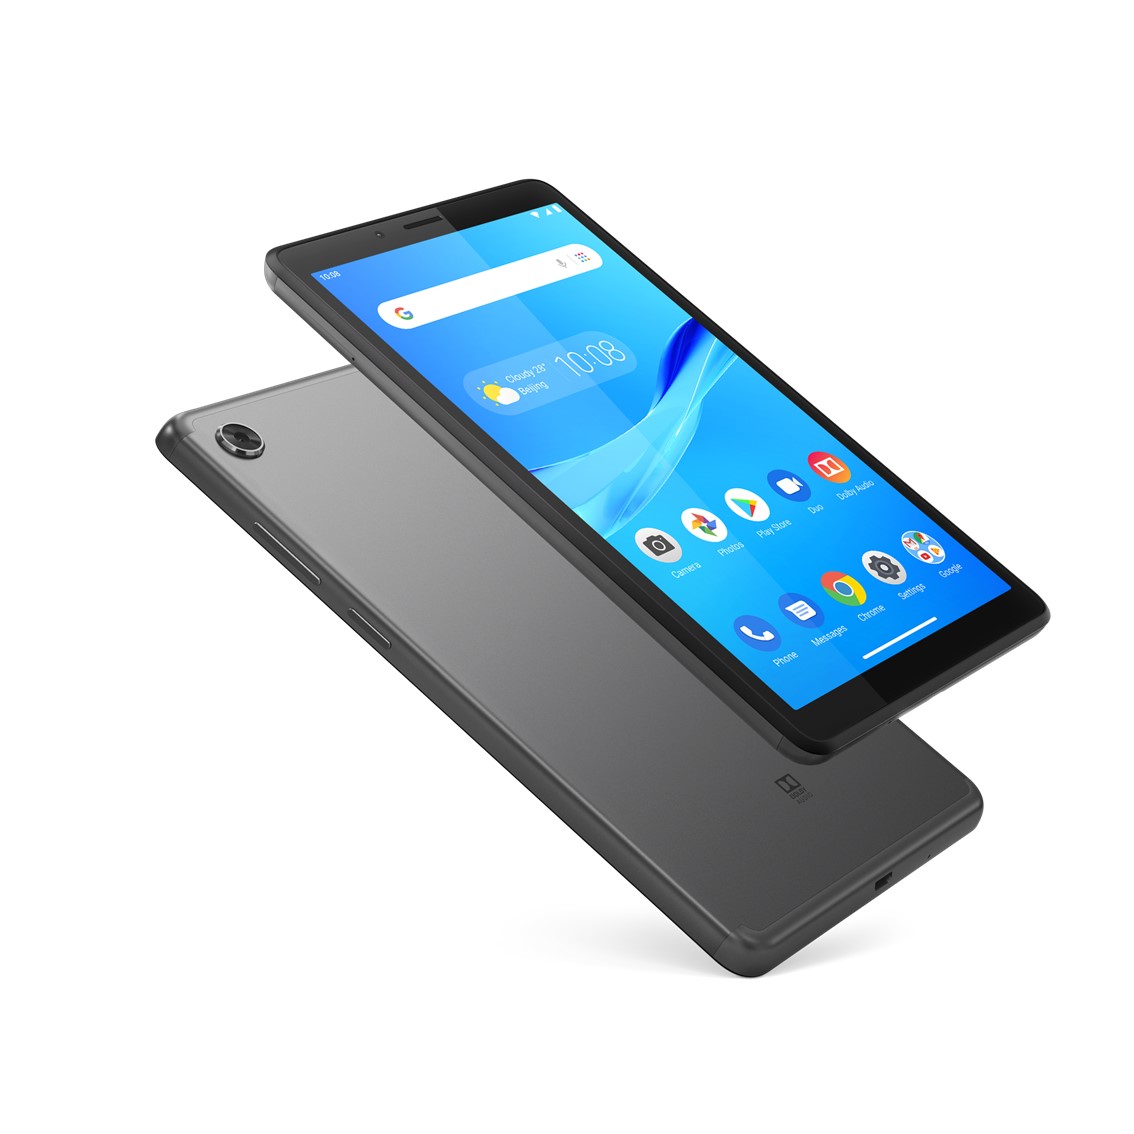 Tablet lenovo tb - 7305f 1gb 16gb 7pulgadas hd android